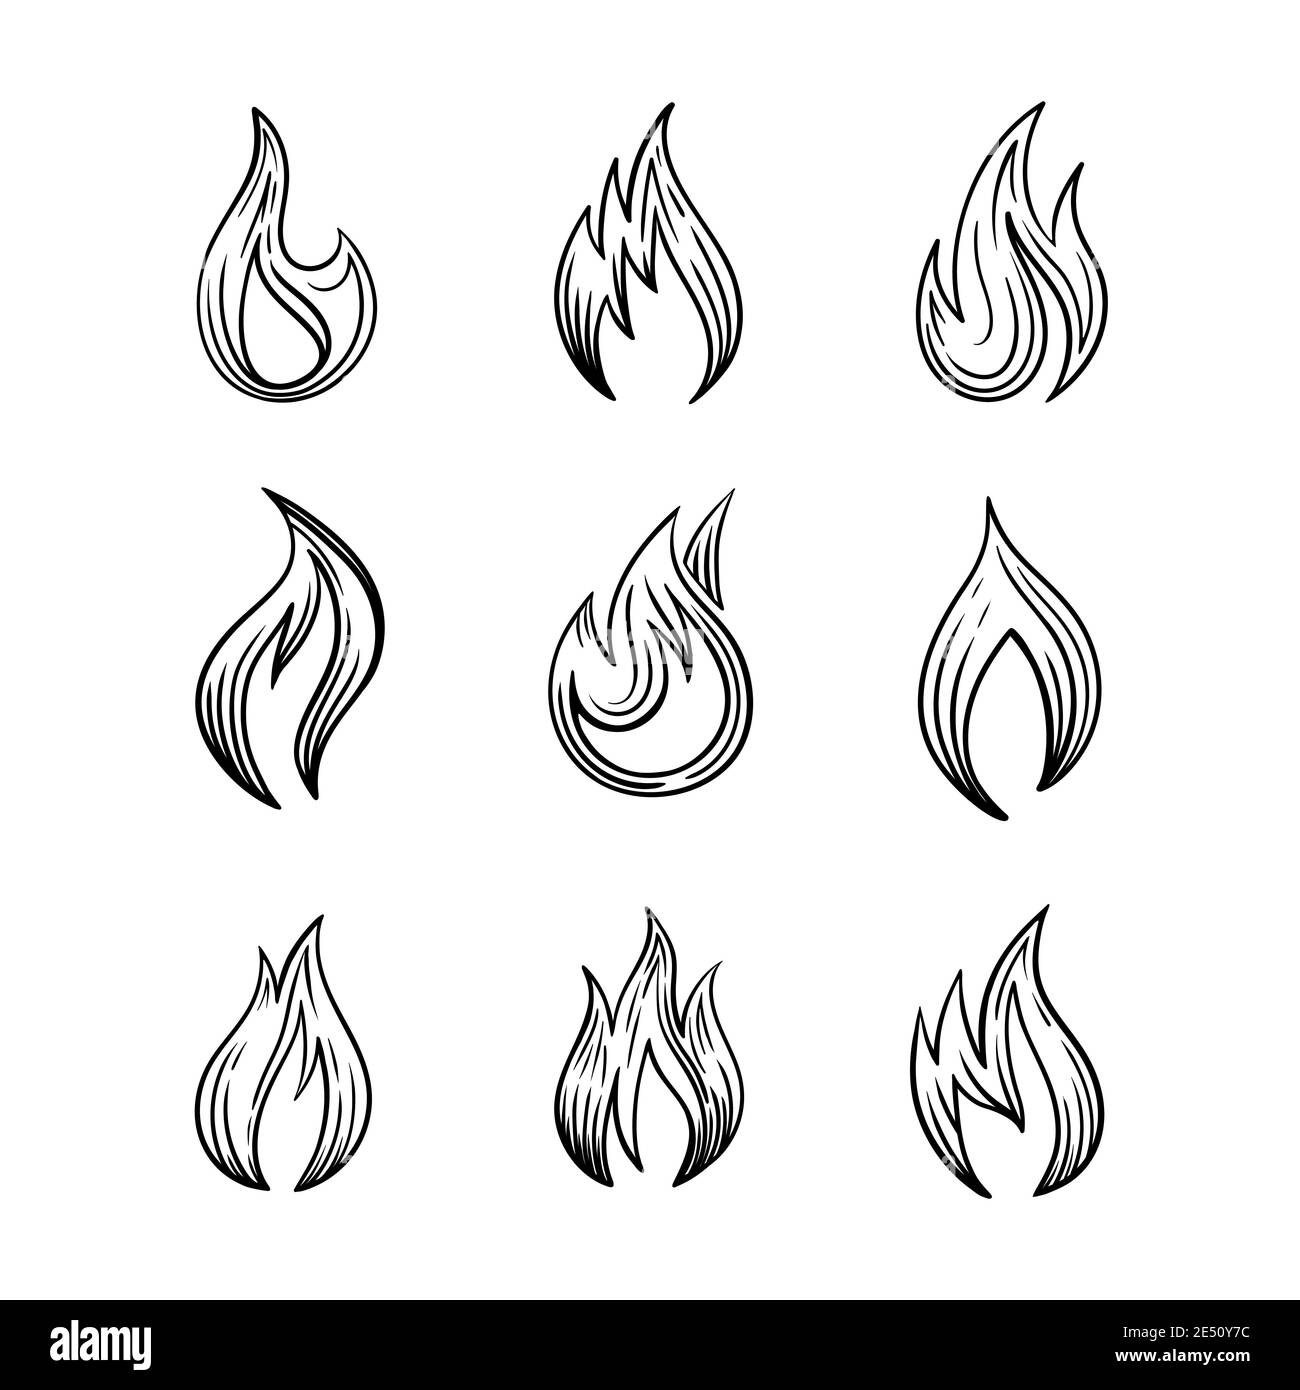 Drawing with fire Banque d'images détourées - Alamy